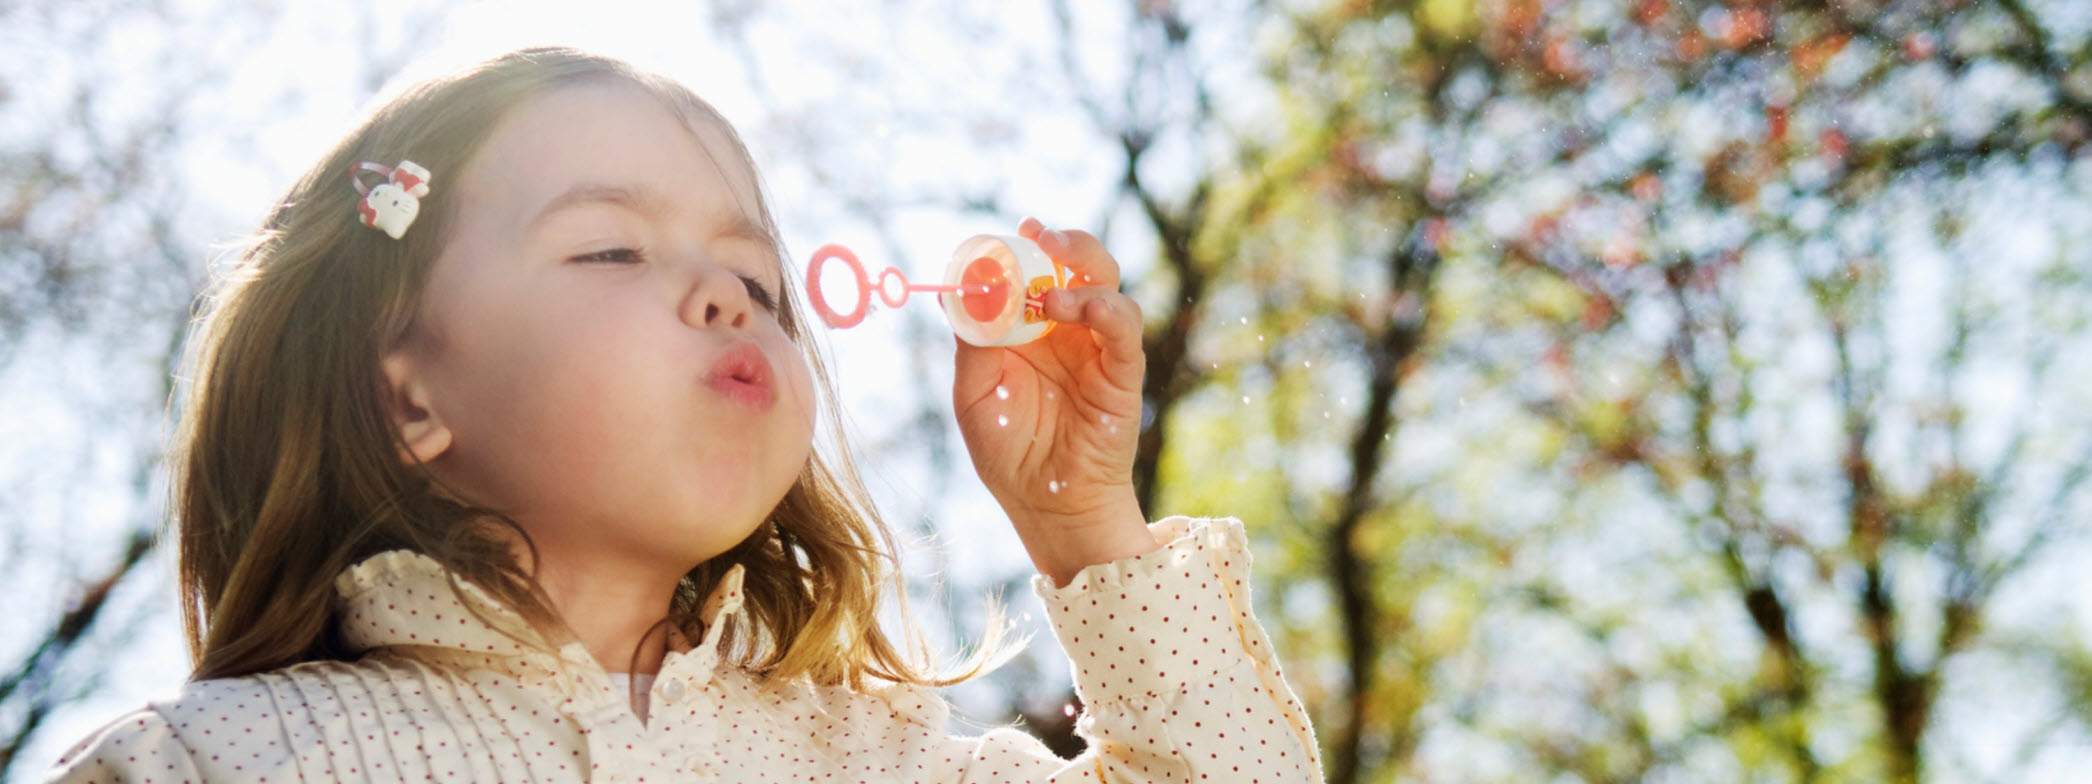 Barn blåser såpbubblor i sommarväder